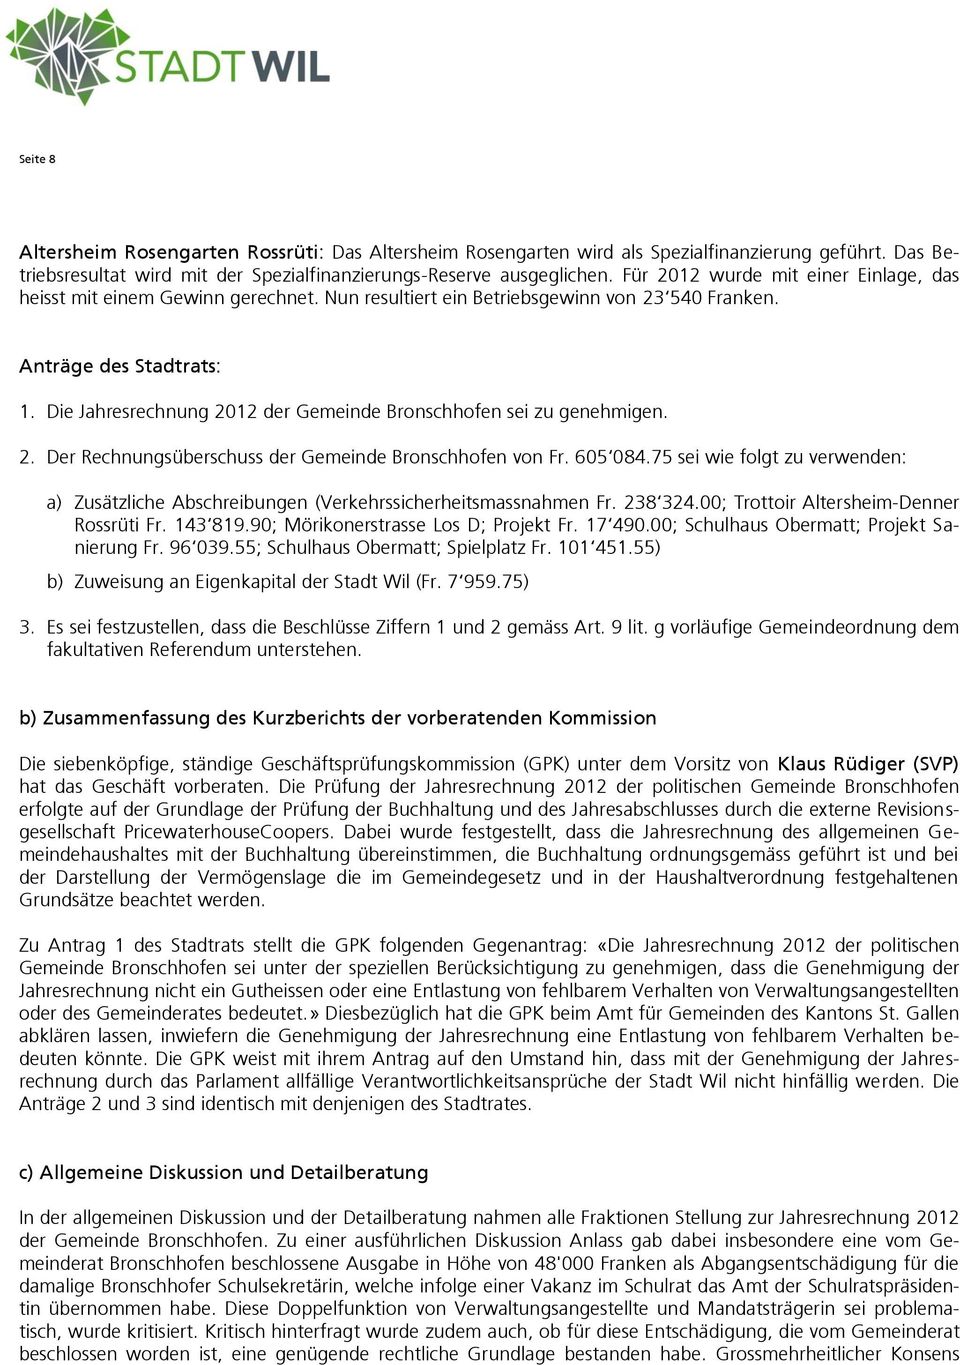 Die Jahresrechnung 2012 der Gemeinde Bronschhofen sei zu genehmigen. 2. Der Rechnungsüberschuss der Gemeinde Bronschhofen von Fr. 605 084.